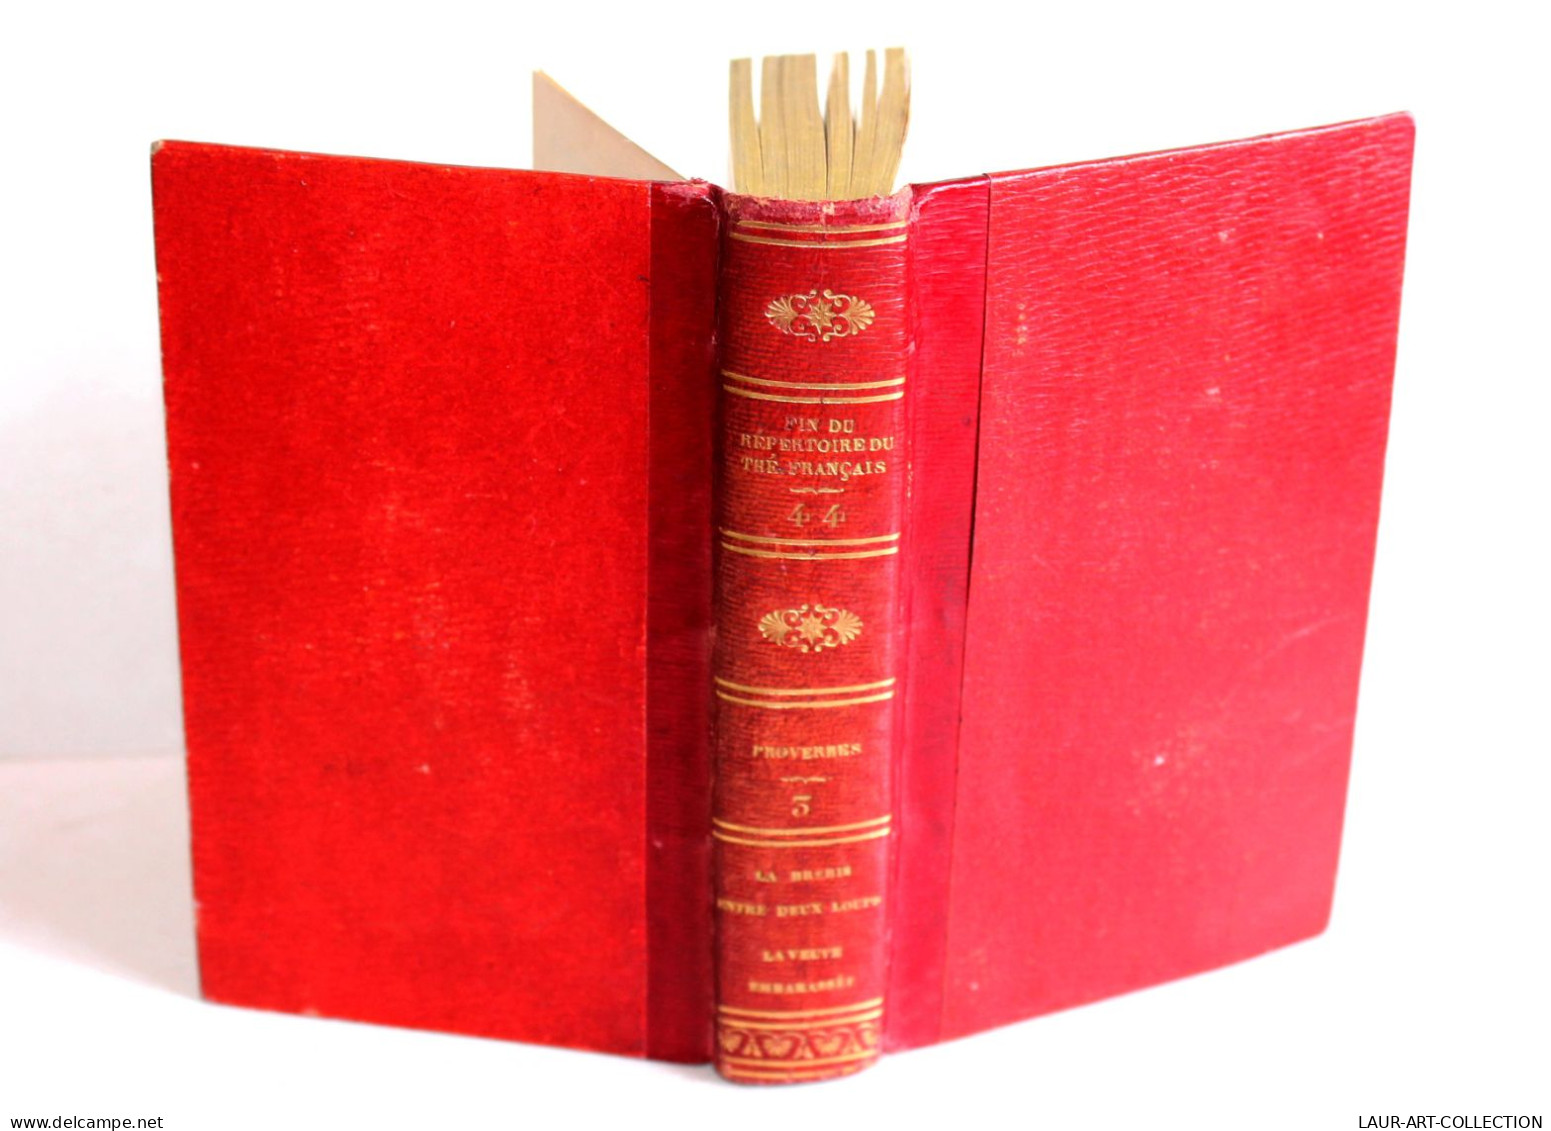 FIN DU REPERTOIRE DU THEATRE FRANCAIS Par LEPEINTRE PROVERBES TOME III 1824 DABO / LIVRE ANCIEN XIXe SIECLE (1803.252) - French Authors